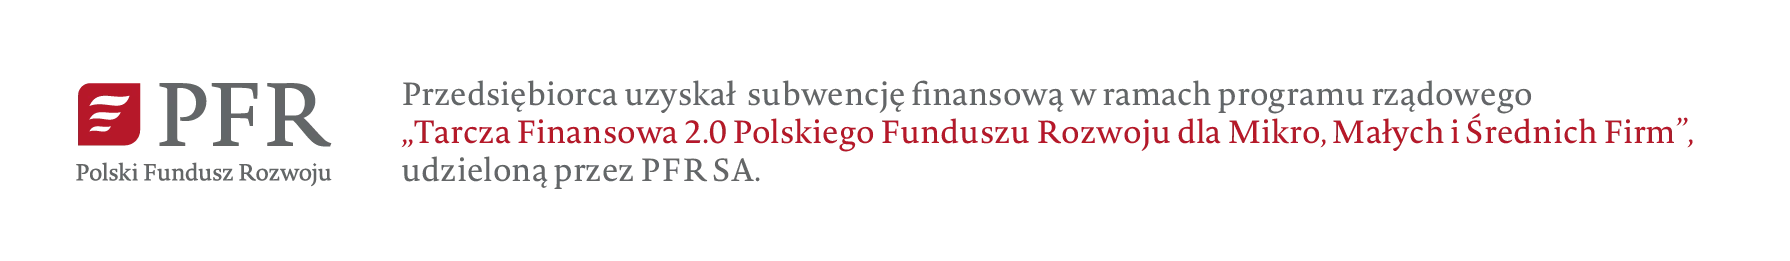 Polski Fundusz Rozwoju